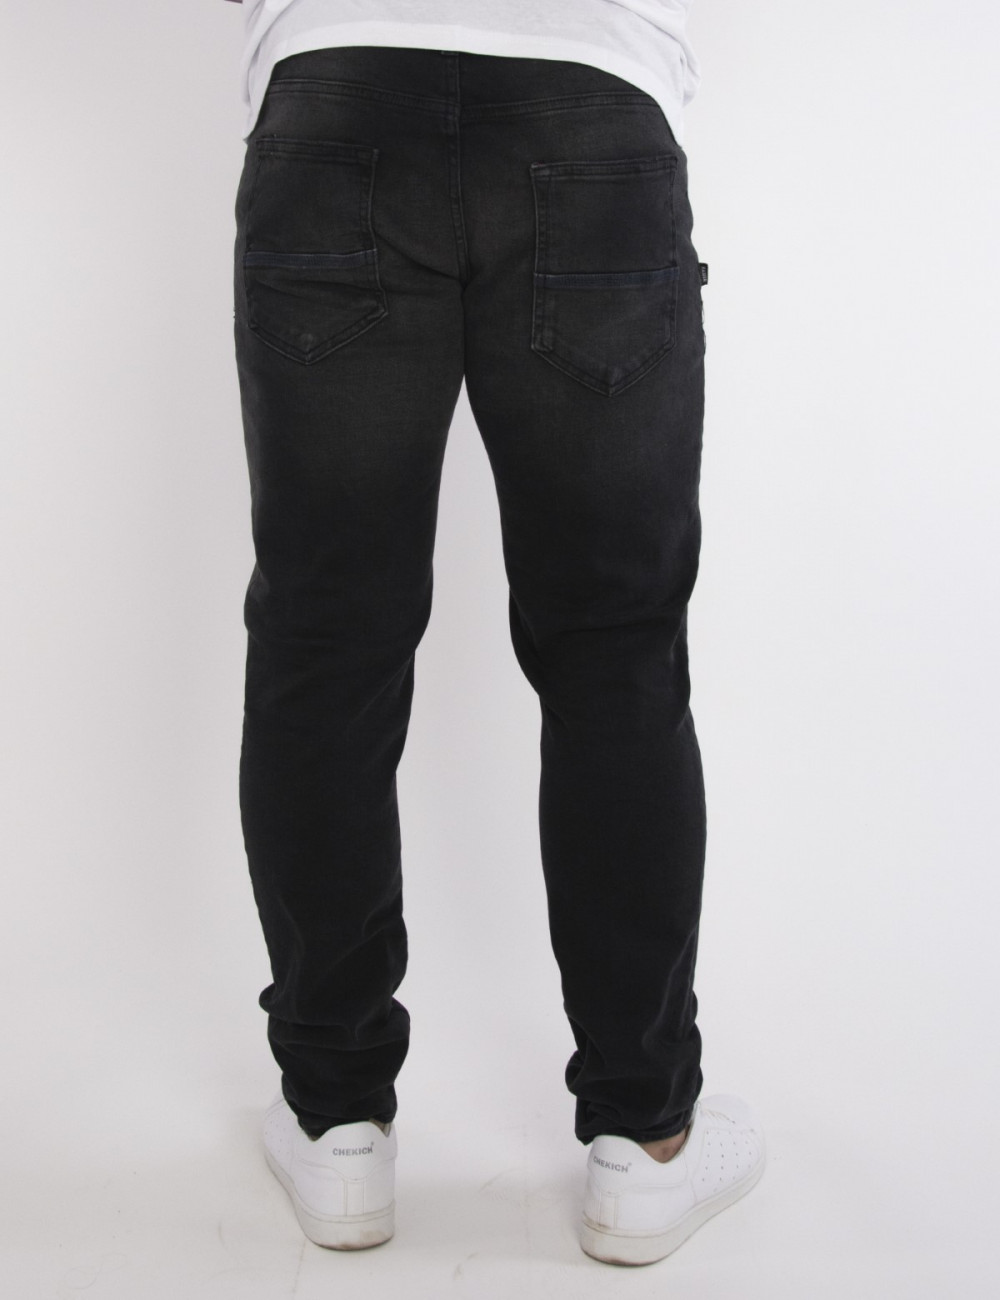 Ανδρικό ελαστικό Μαύρο Τζιν Παντελόνι Πλυμένο πεντάτσεπο με φερμουάρ HM51432